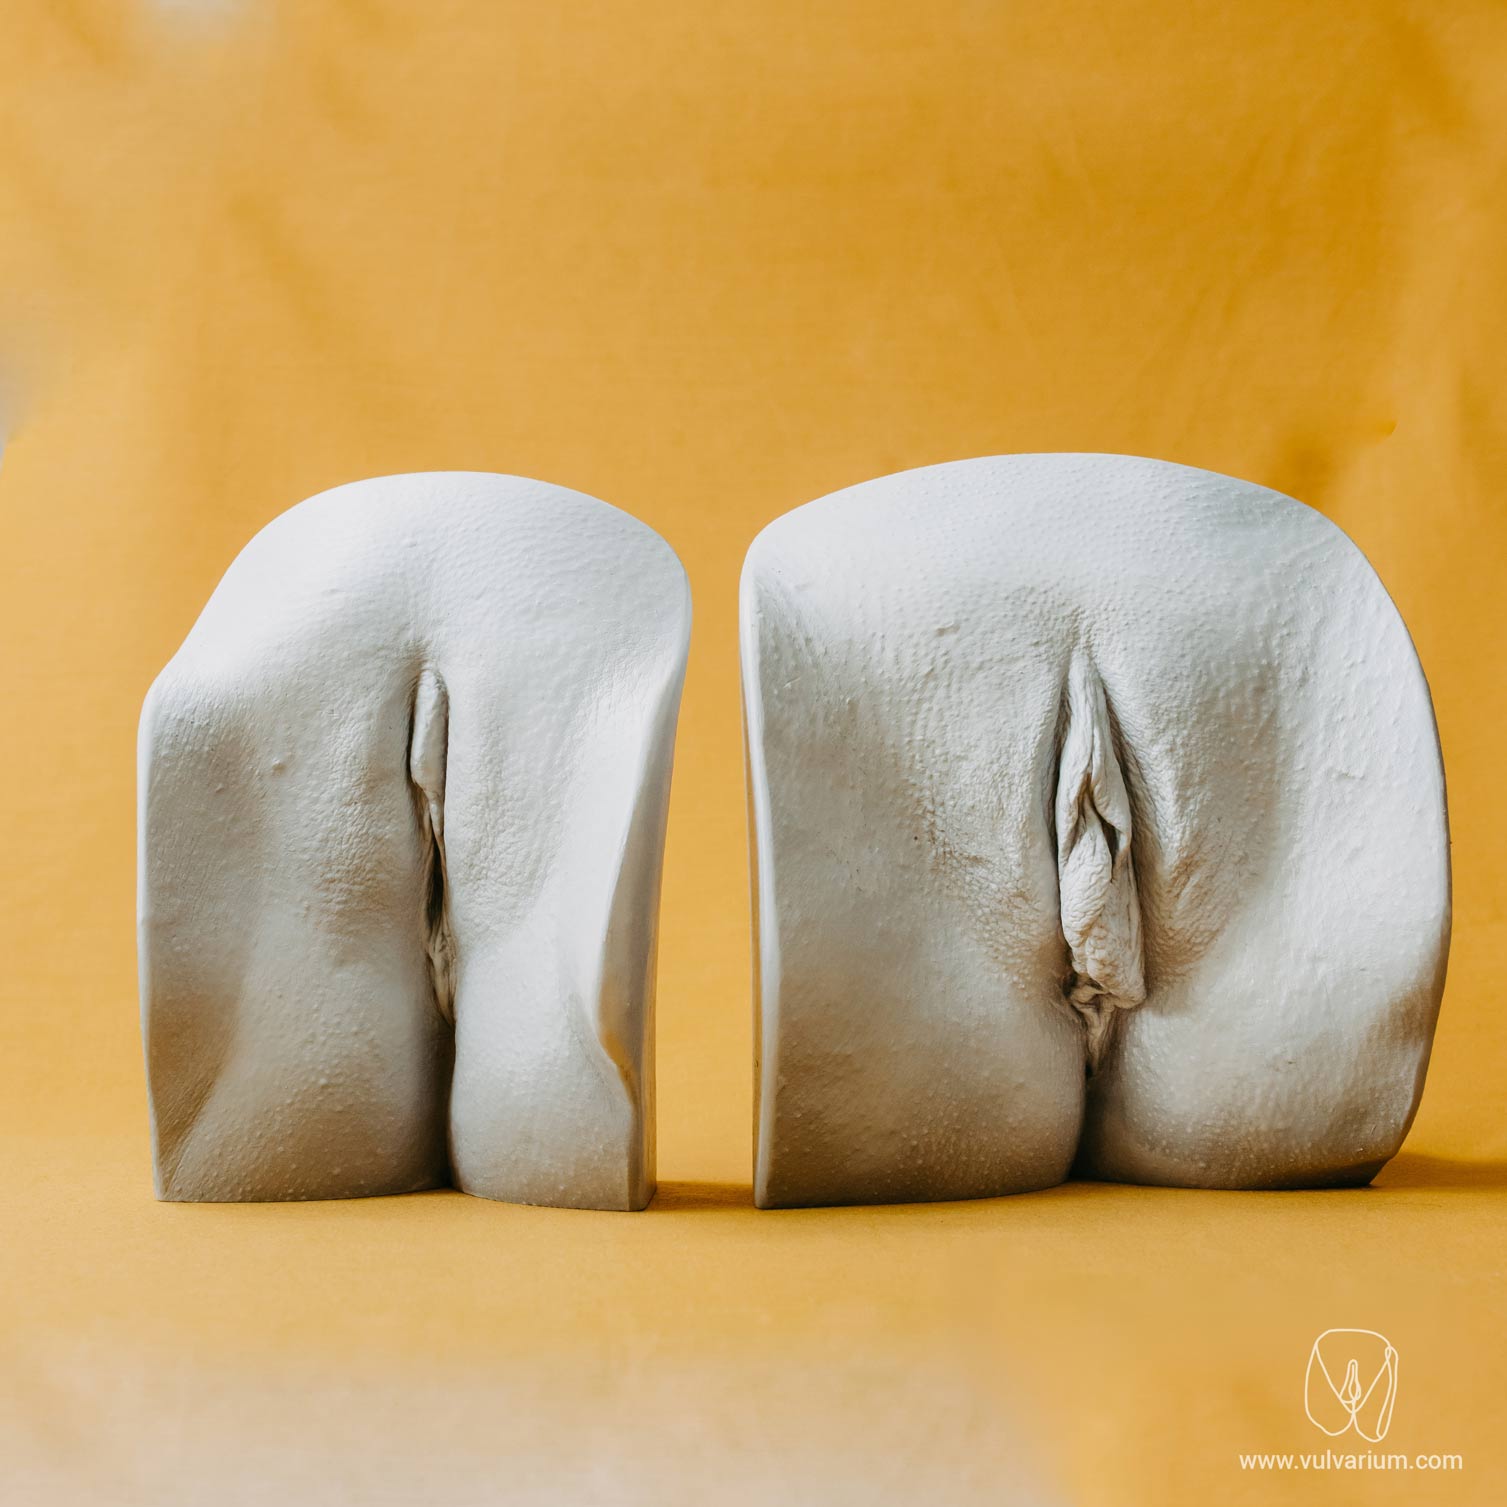 vulva casting - vulvarium